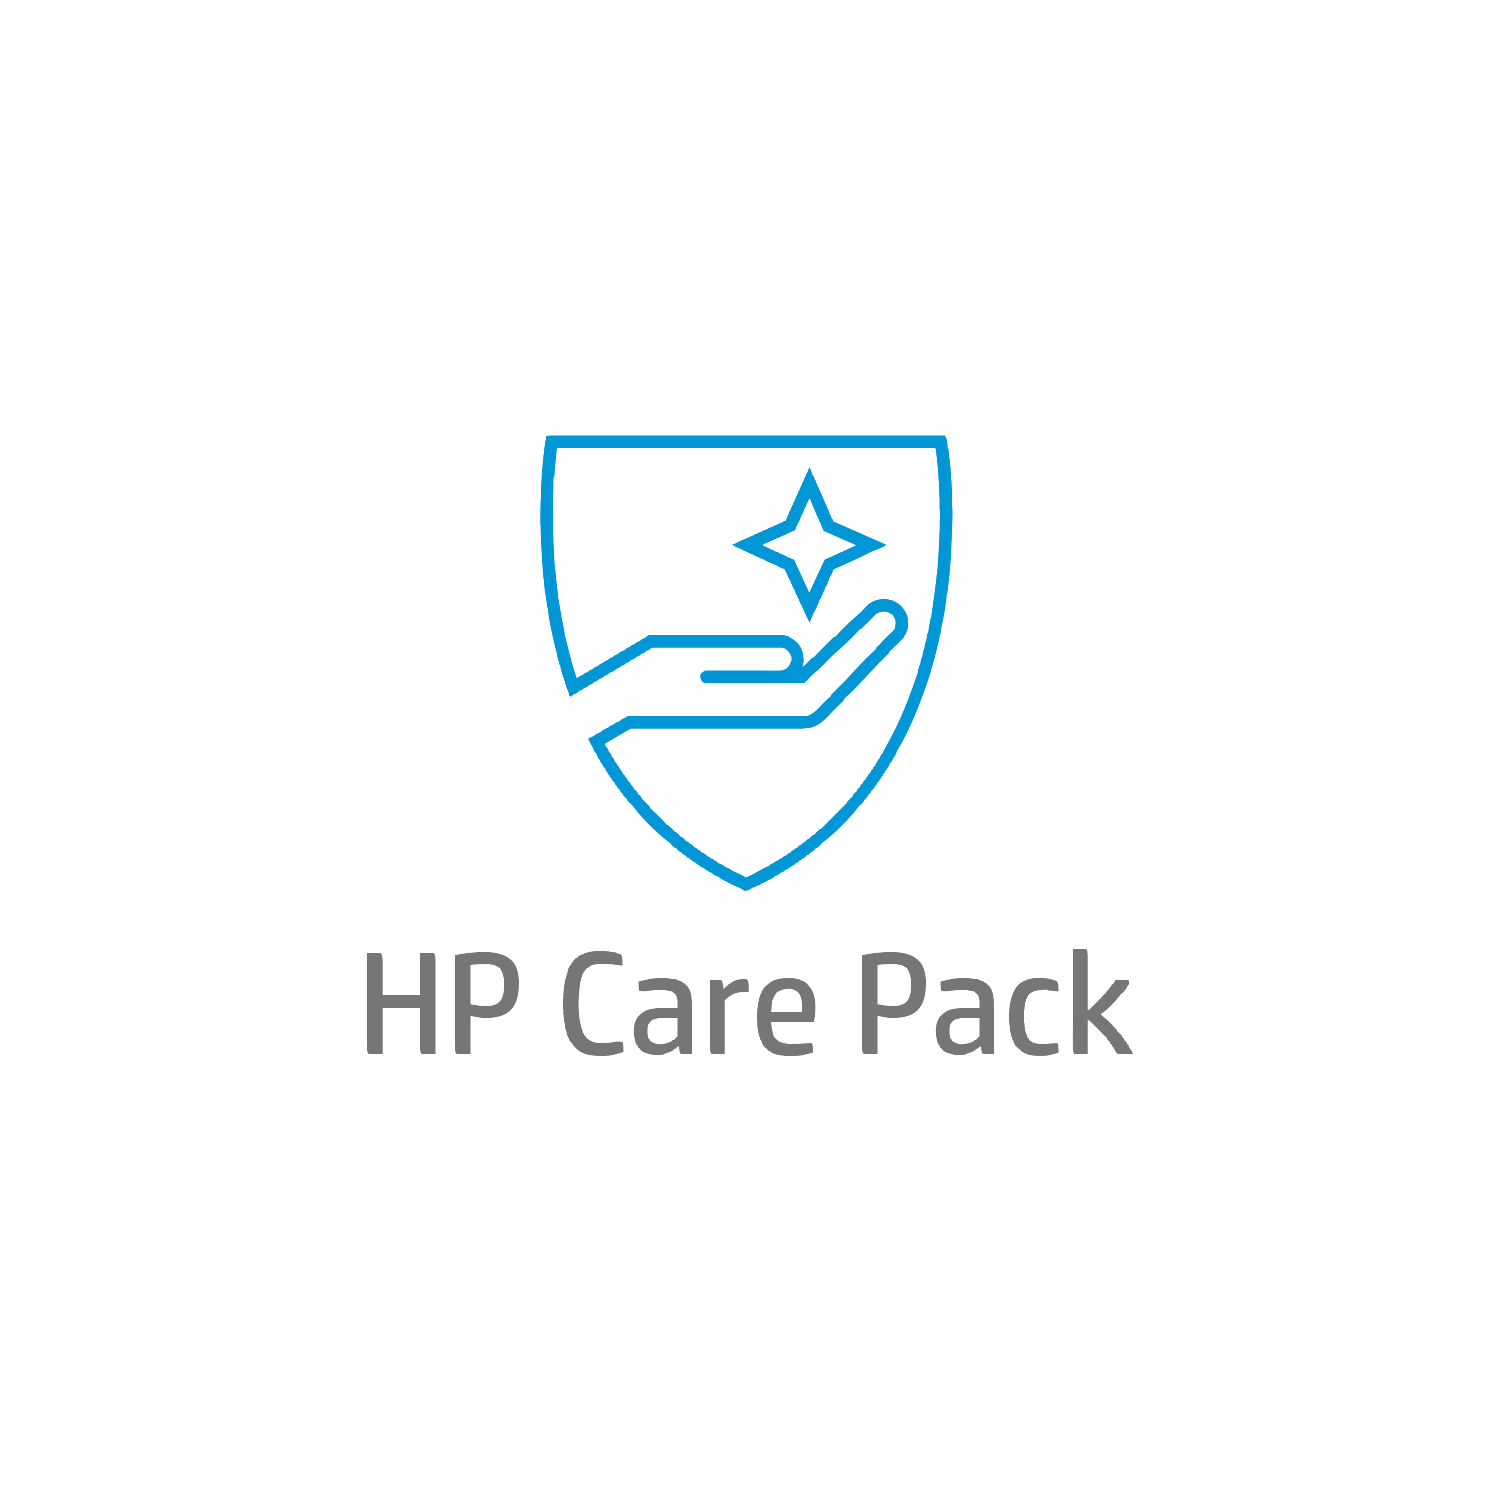 Bild von HP Care 3 Jahre Hardware-Support mit Einbehaltung defekter Medienträger (DMR) für Mobile Workstations - Externe Reparatur - Außerhalb des Kundenstandorts - Unter Garantie - Standardarbeitstage - 9 Stunden - 3 Jahre - Reparatur innerhalb von 3–7 Werktagen